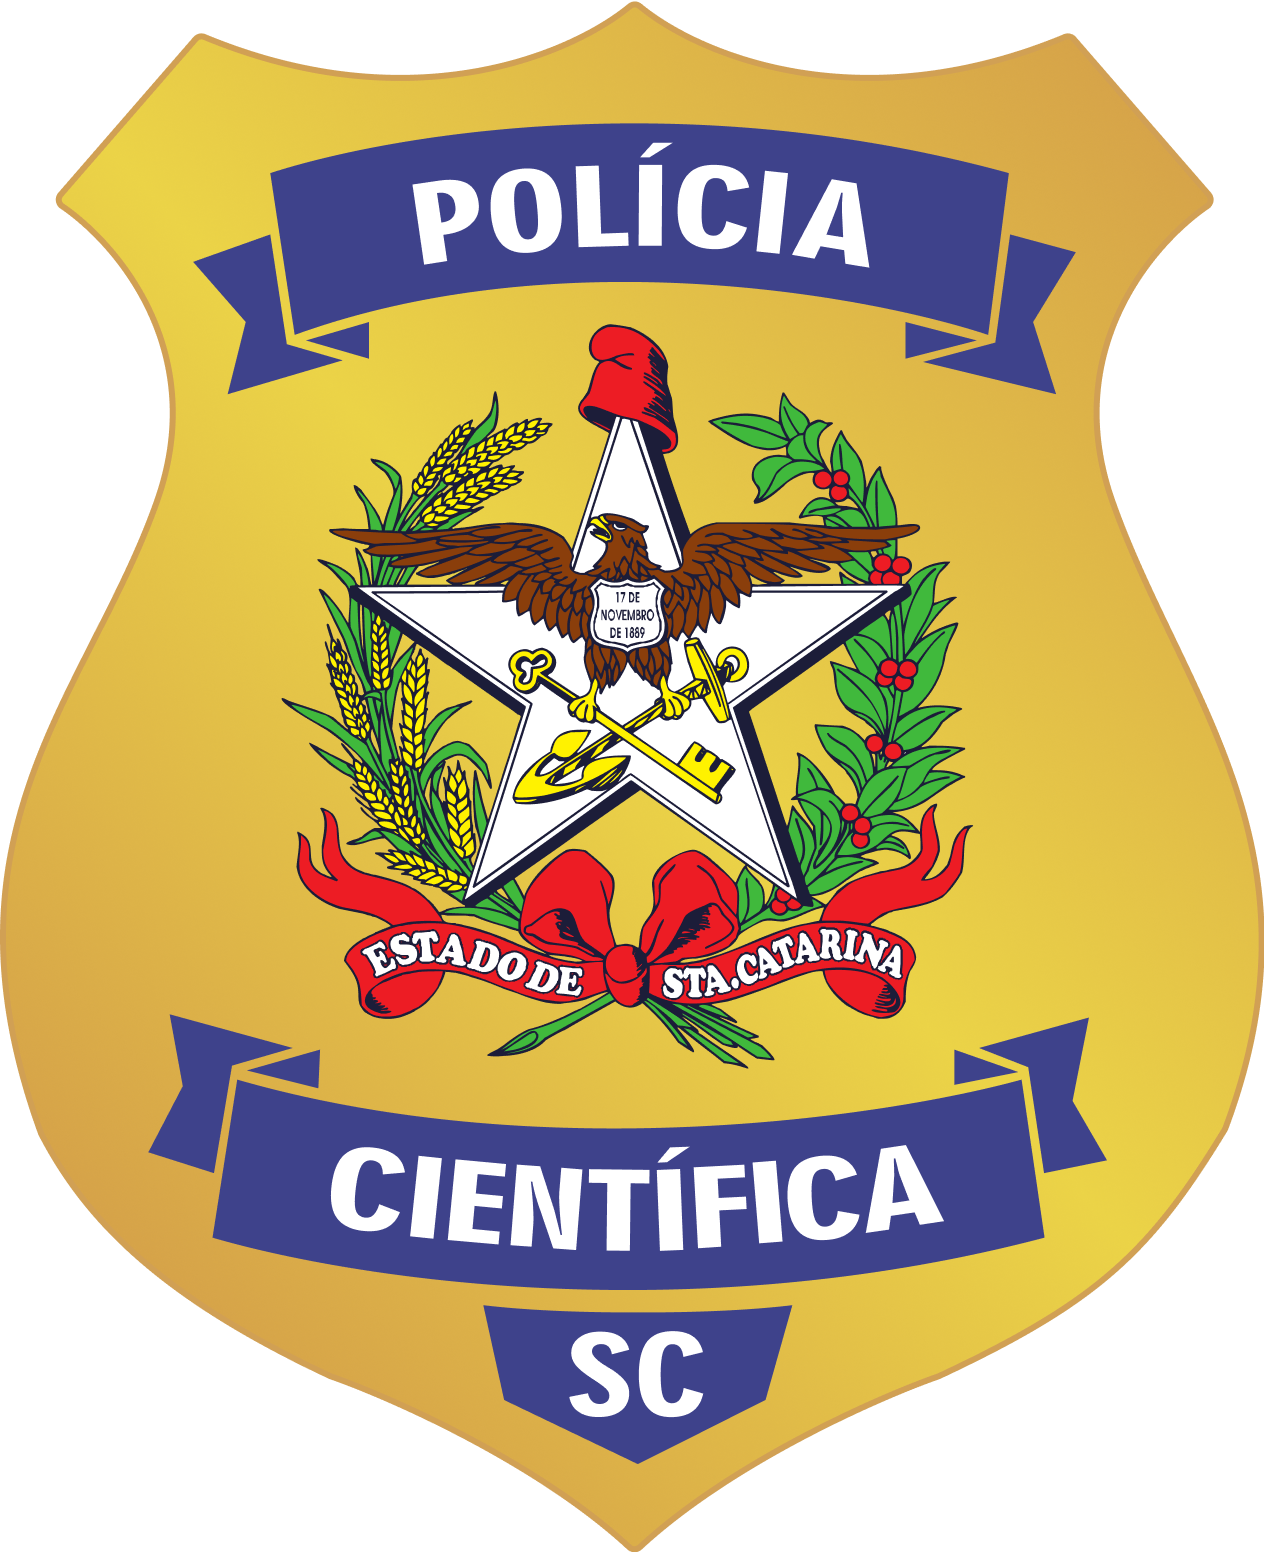 Concurso Polícia Científica SC: resultado é homologado!